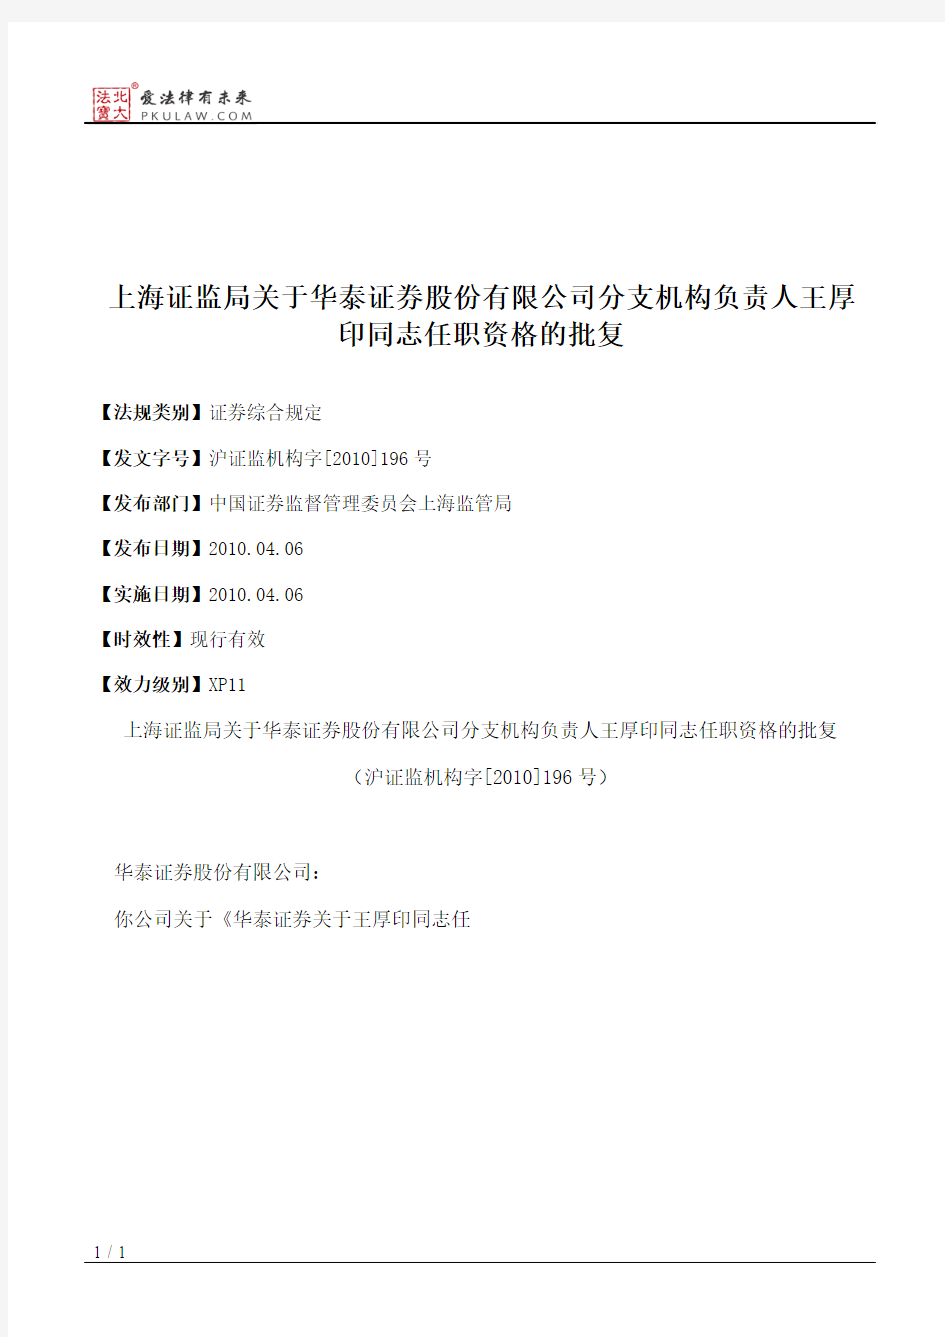 上海证监局关于华泰证券股份有限公司分支机构负责人王厚印同志任